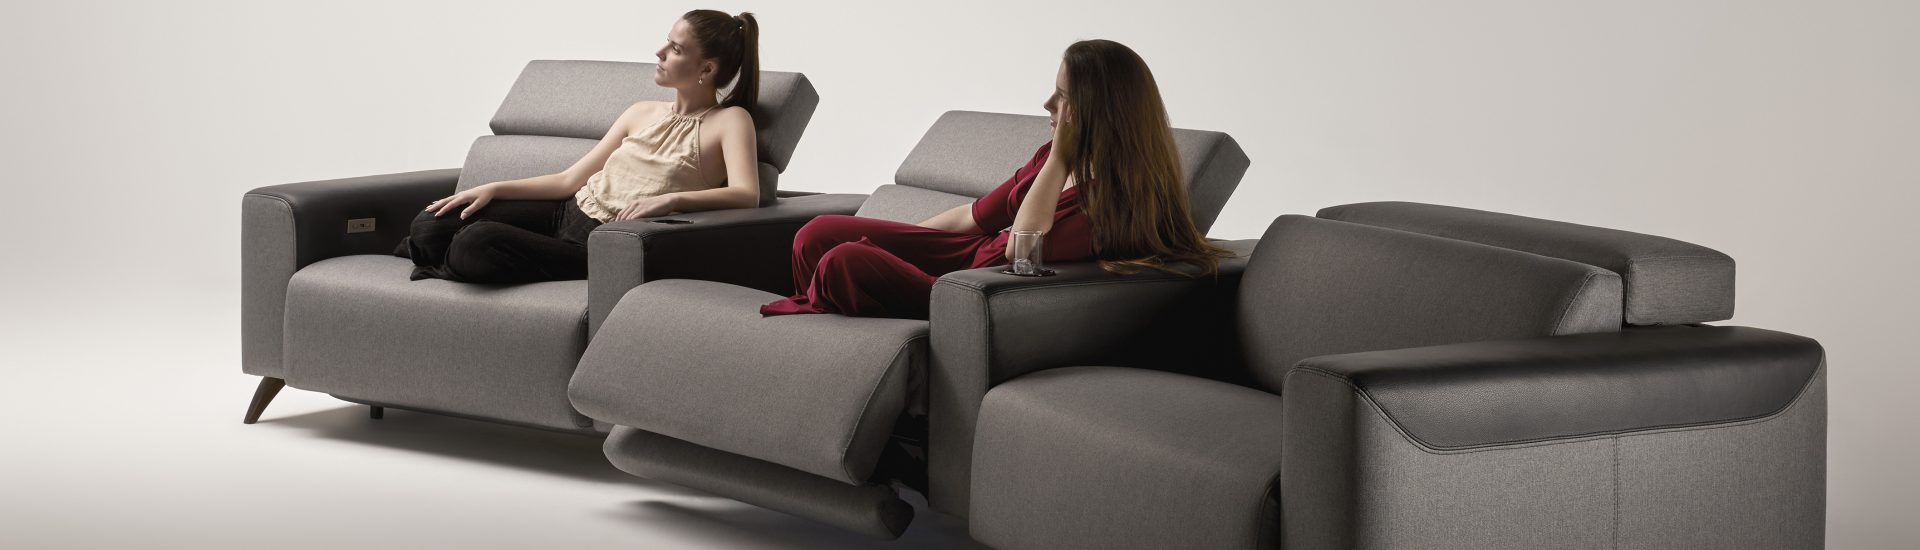 sofas lujo y relax confortables